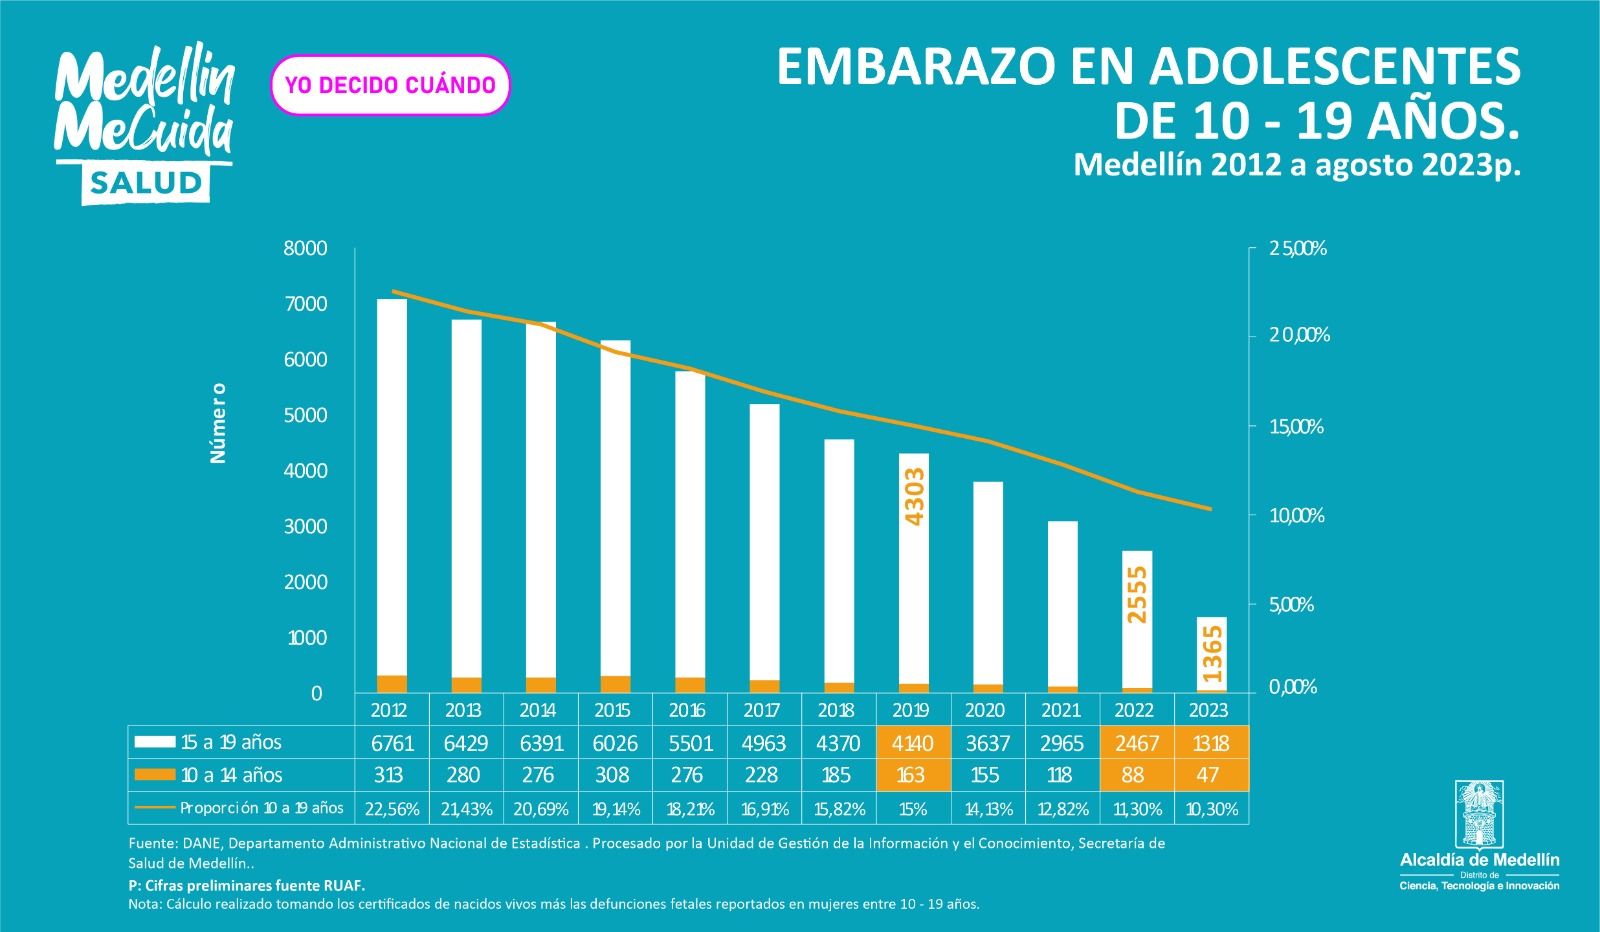 El embarazo adolescente en Medellín presenta una reducción histórica 